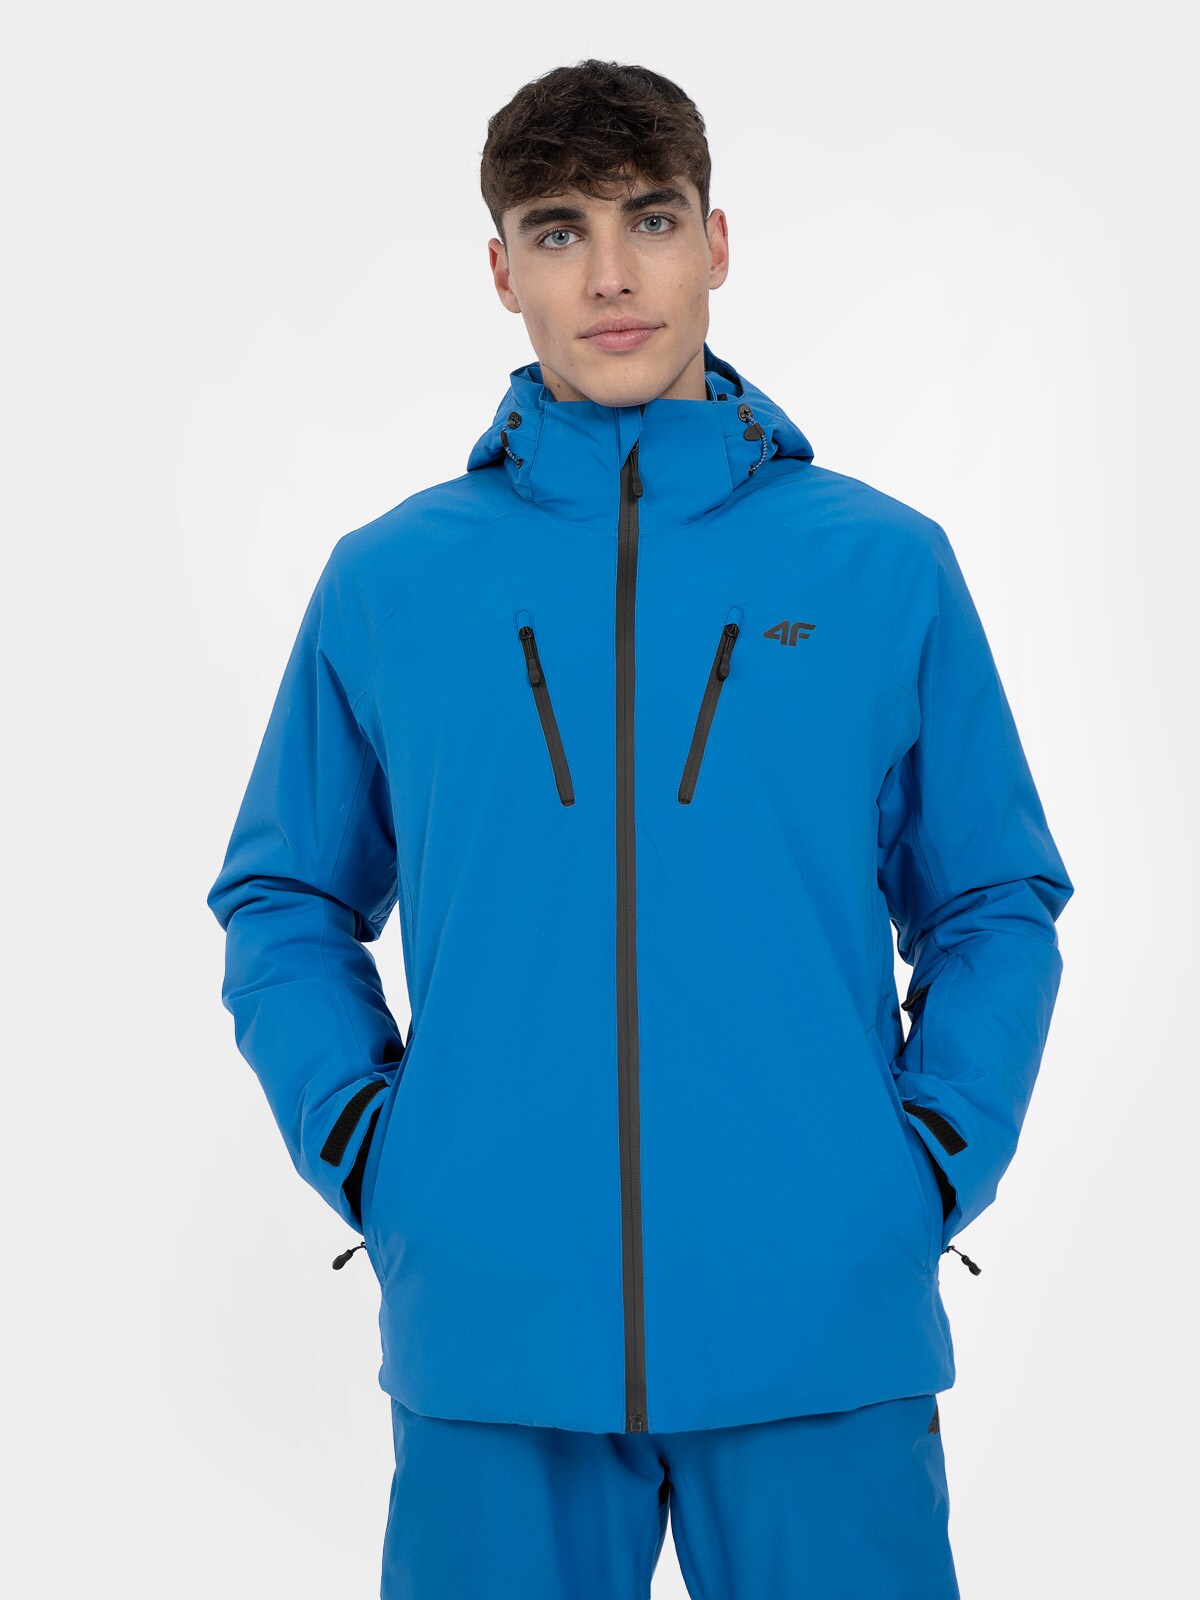 Men's ski jacket 10000 membrane